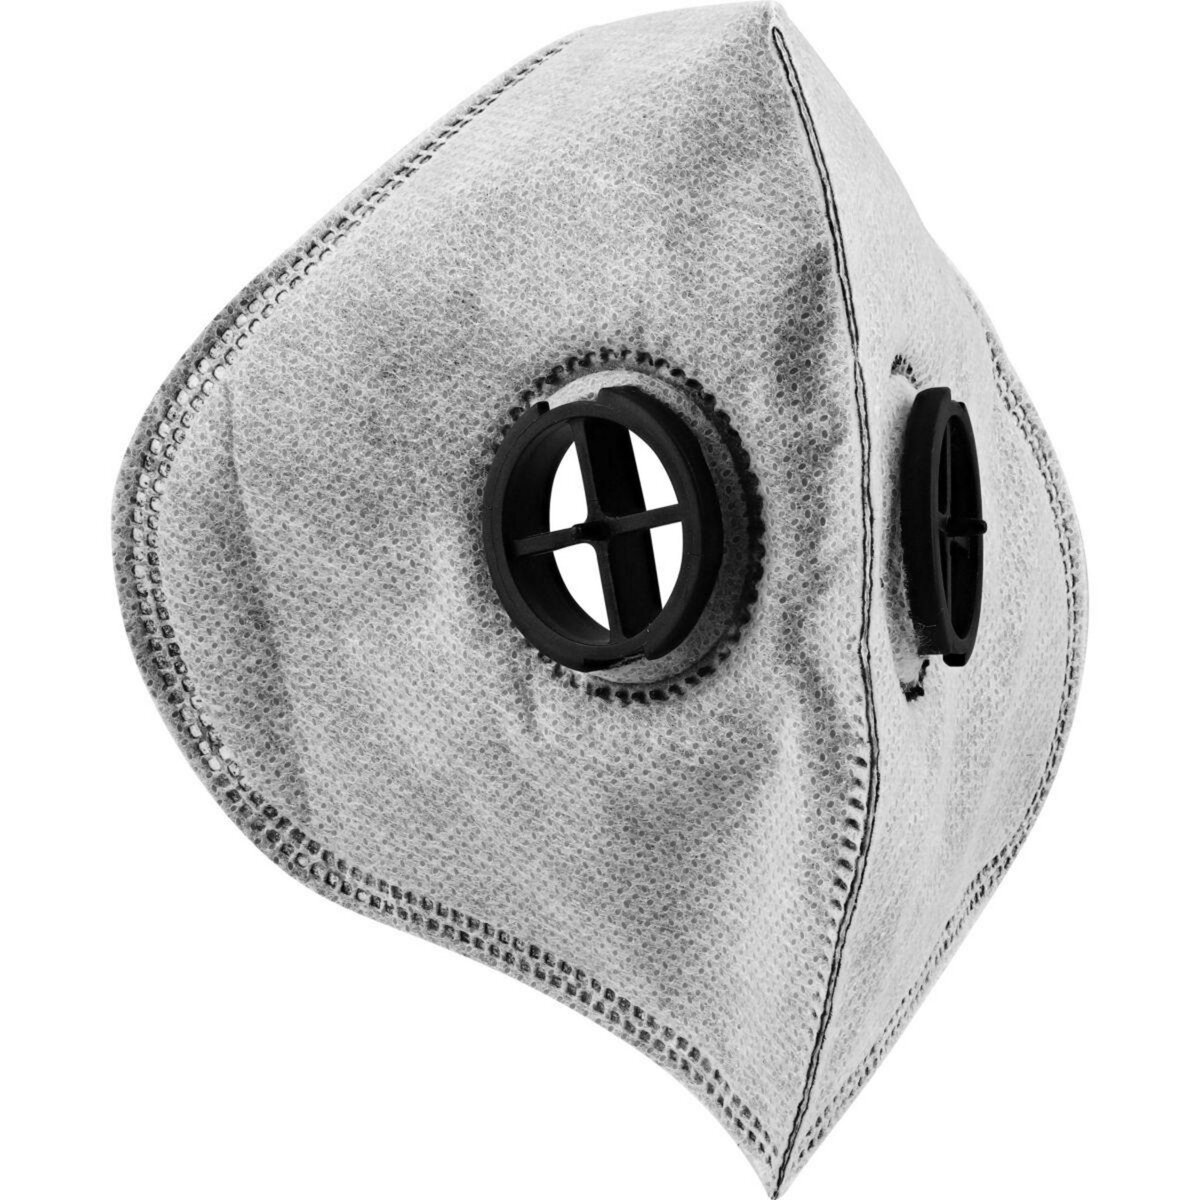 TNB Filtre de rechange x3 pour masque anti-pollution